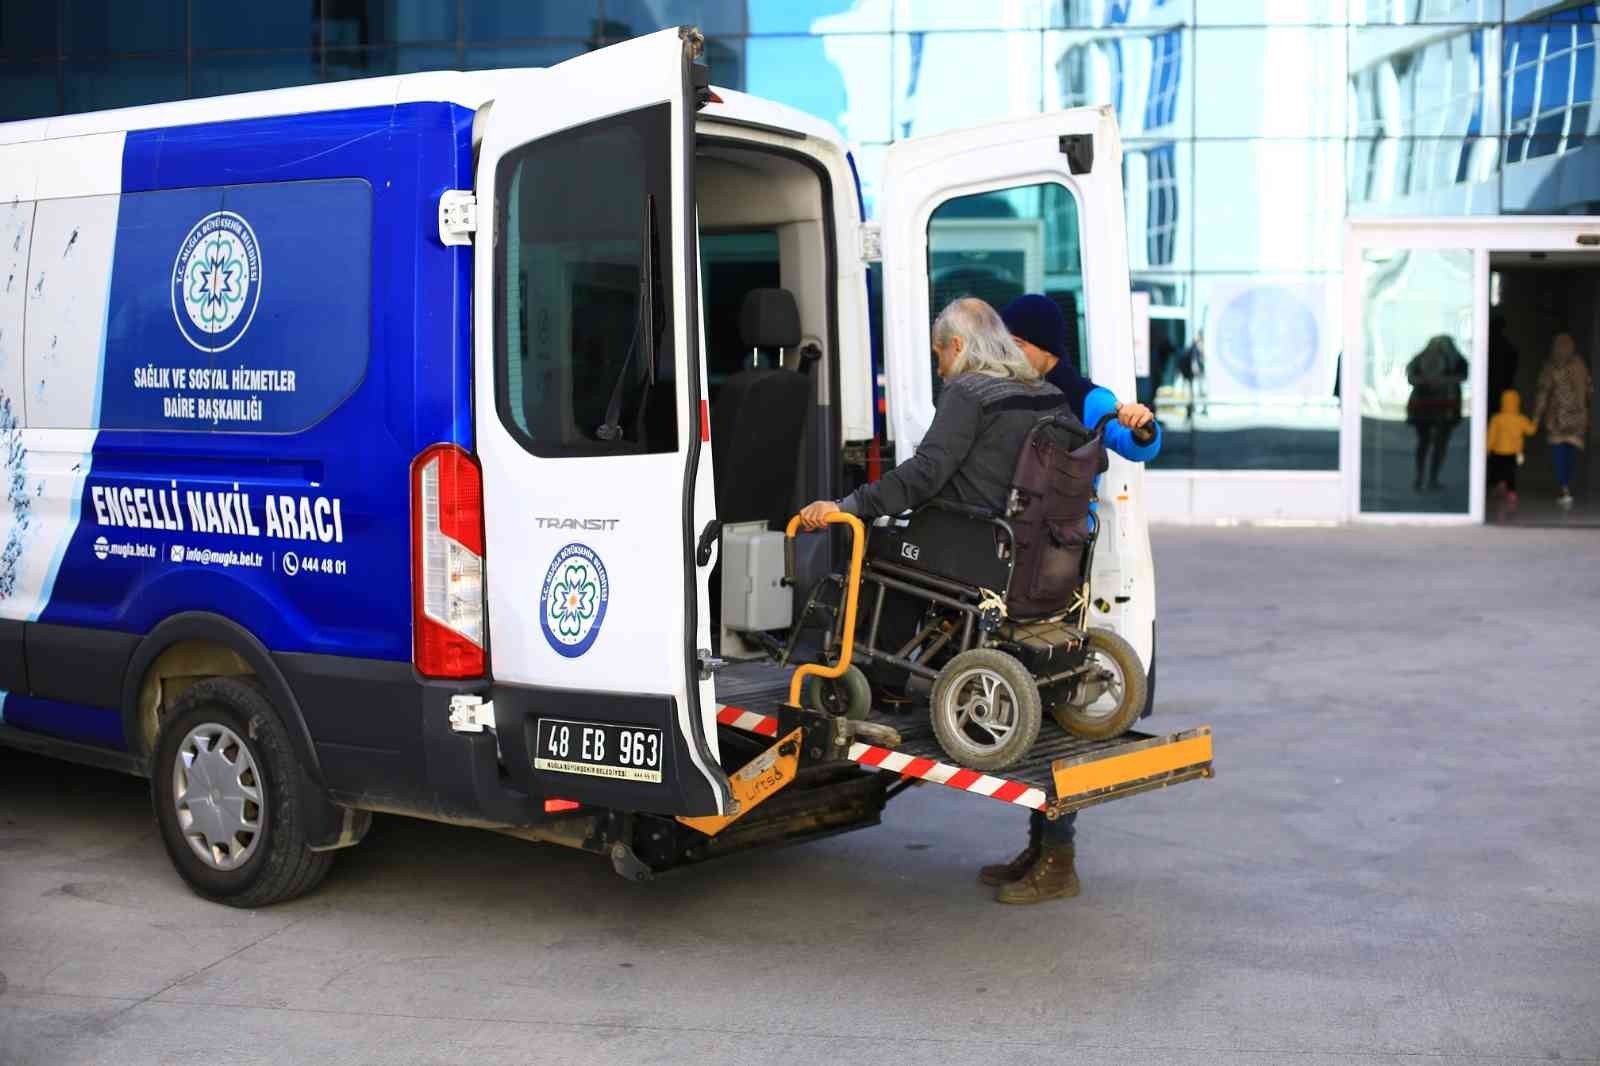 Engelli bireylere 6 yılda 18 bin 500 nakil hizmeti #mugla